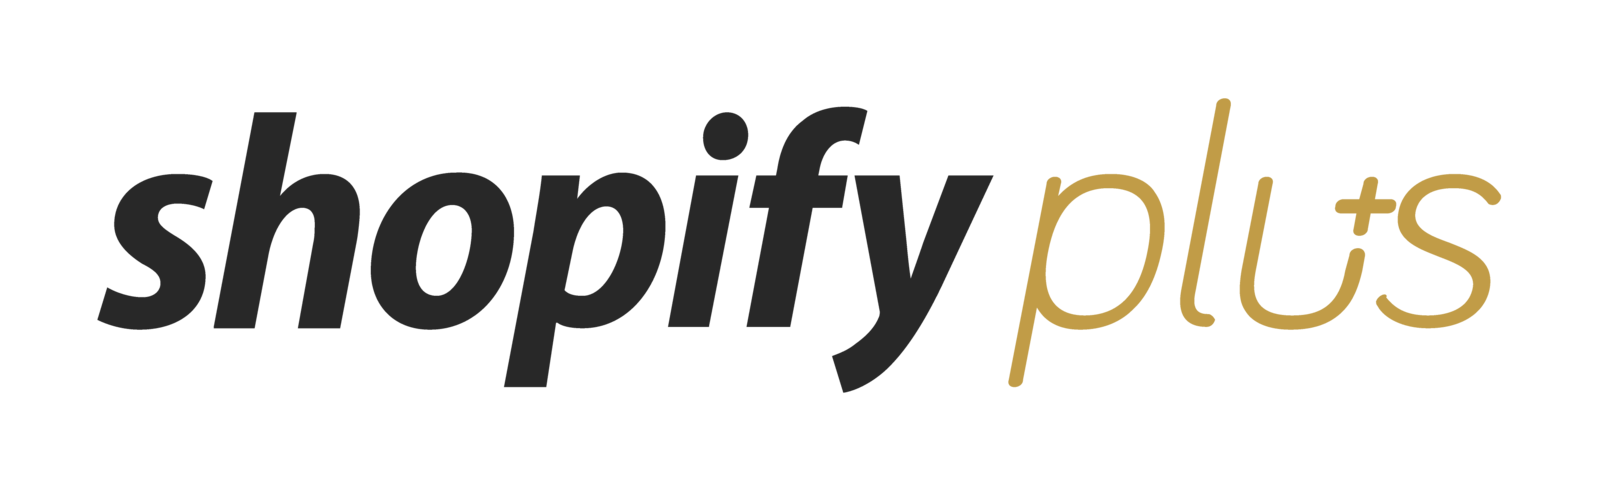 Shopify Plus Logo - Shopify Plus Review 2019 | Reviews, Ratings, Complaints